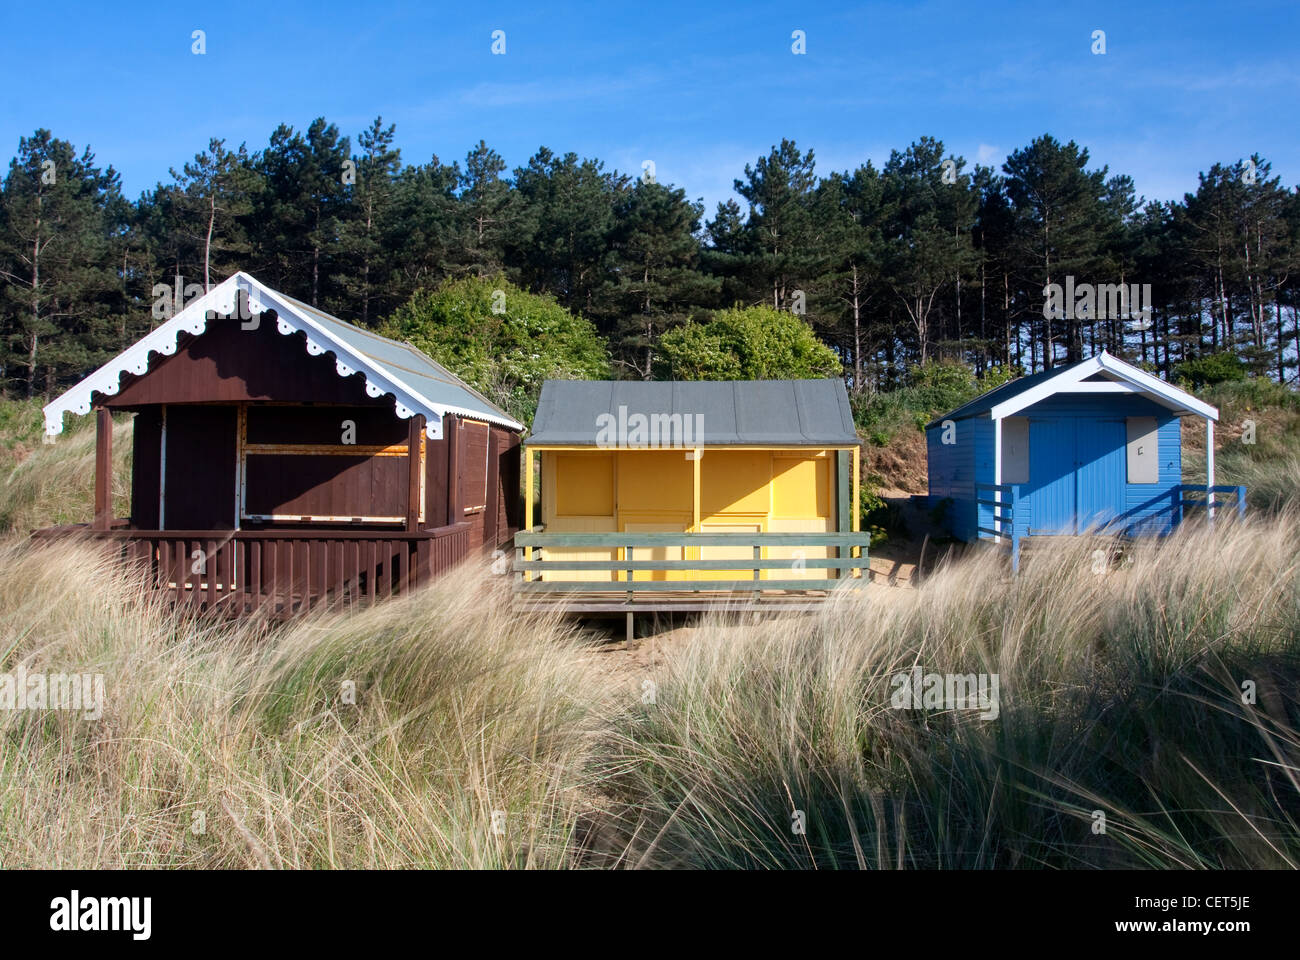 Beach huts at Old Hunstanton on the Nofolk Coast. Stock Photo